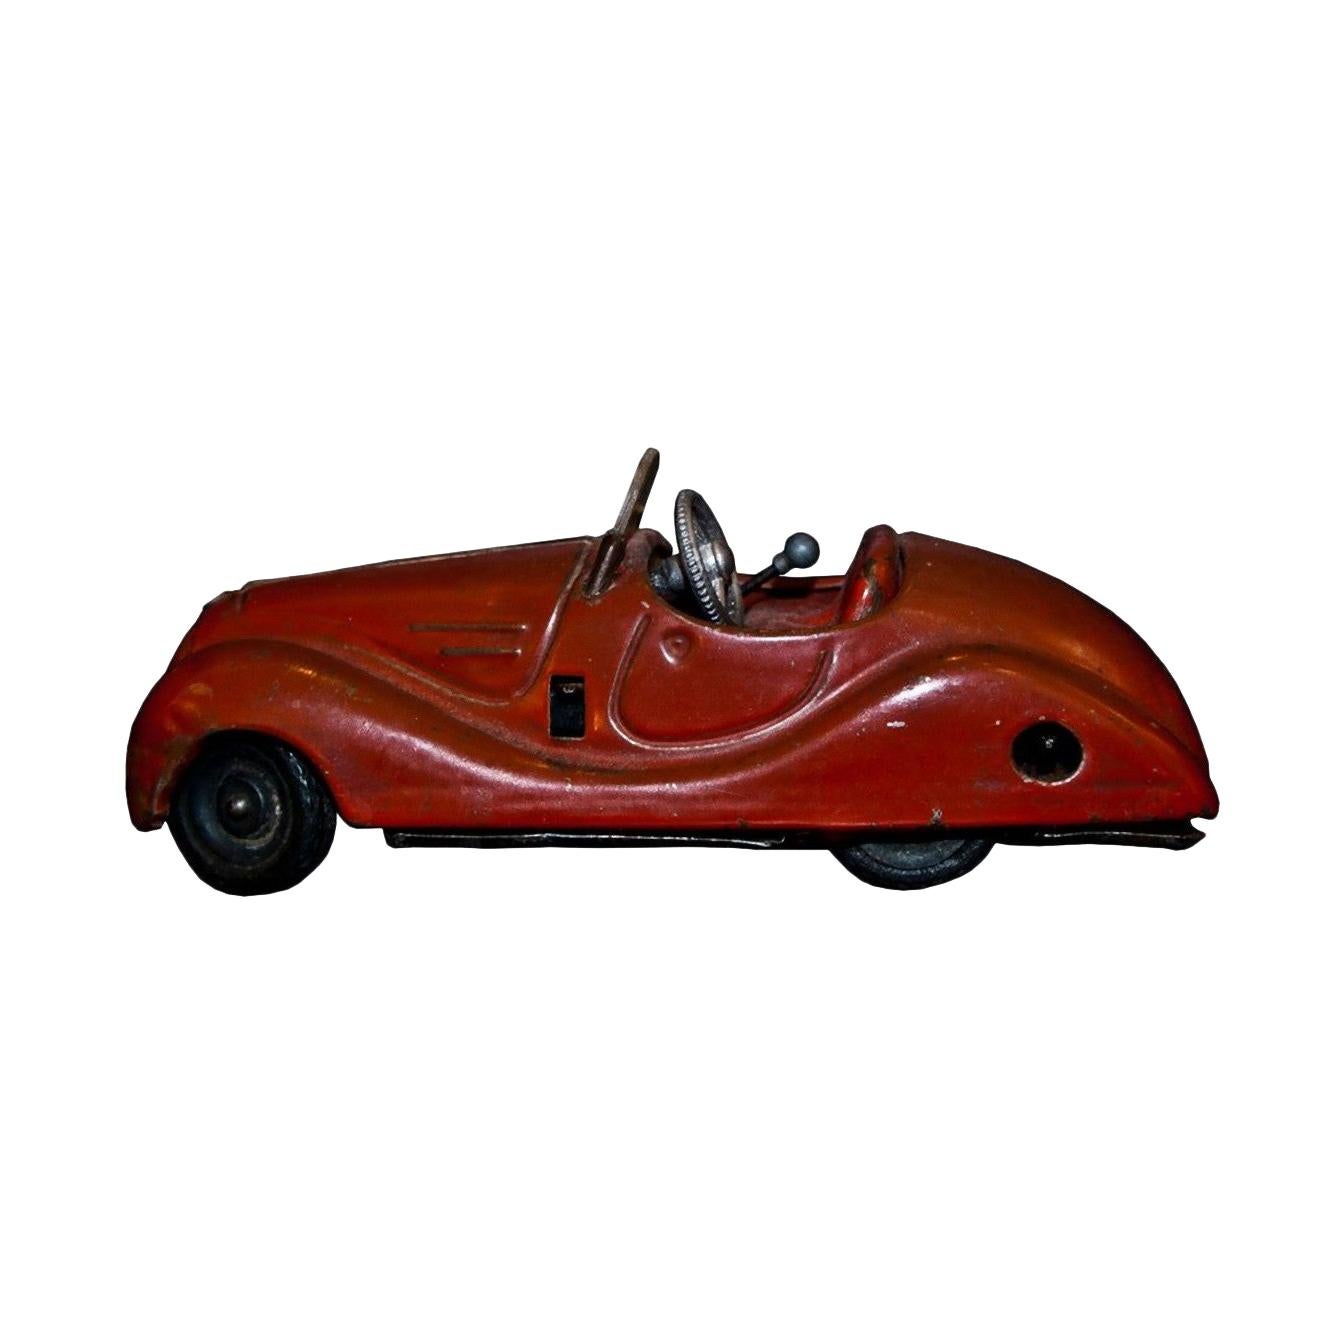 Jouet vintage, Schuco Examico 4001 Car, années 1950